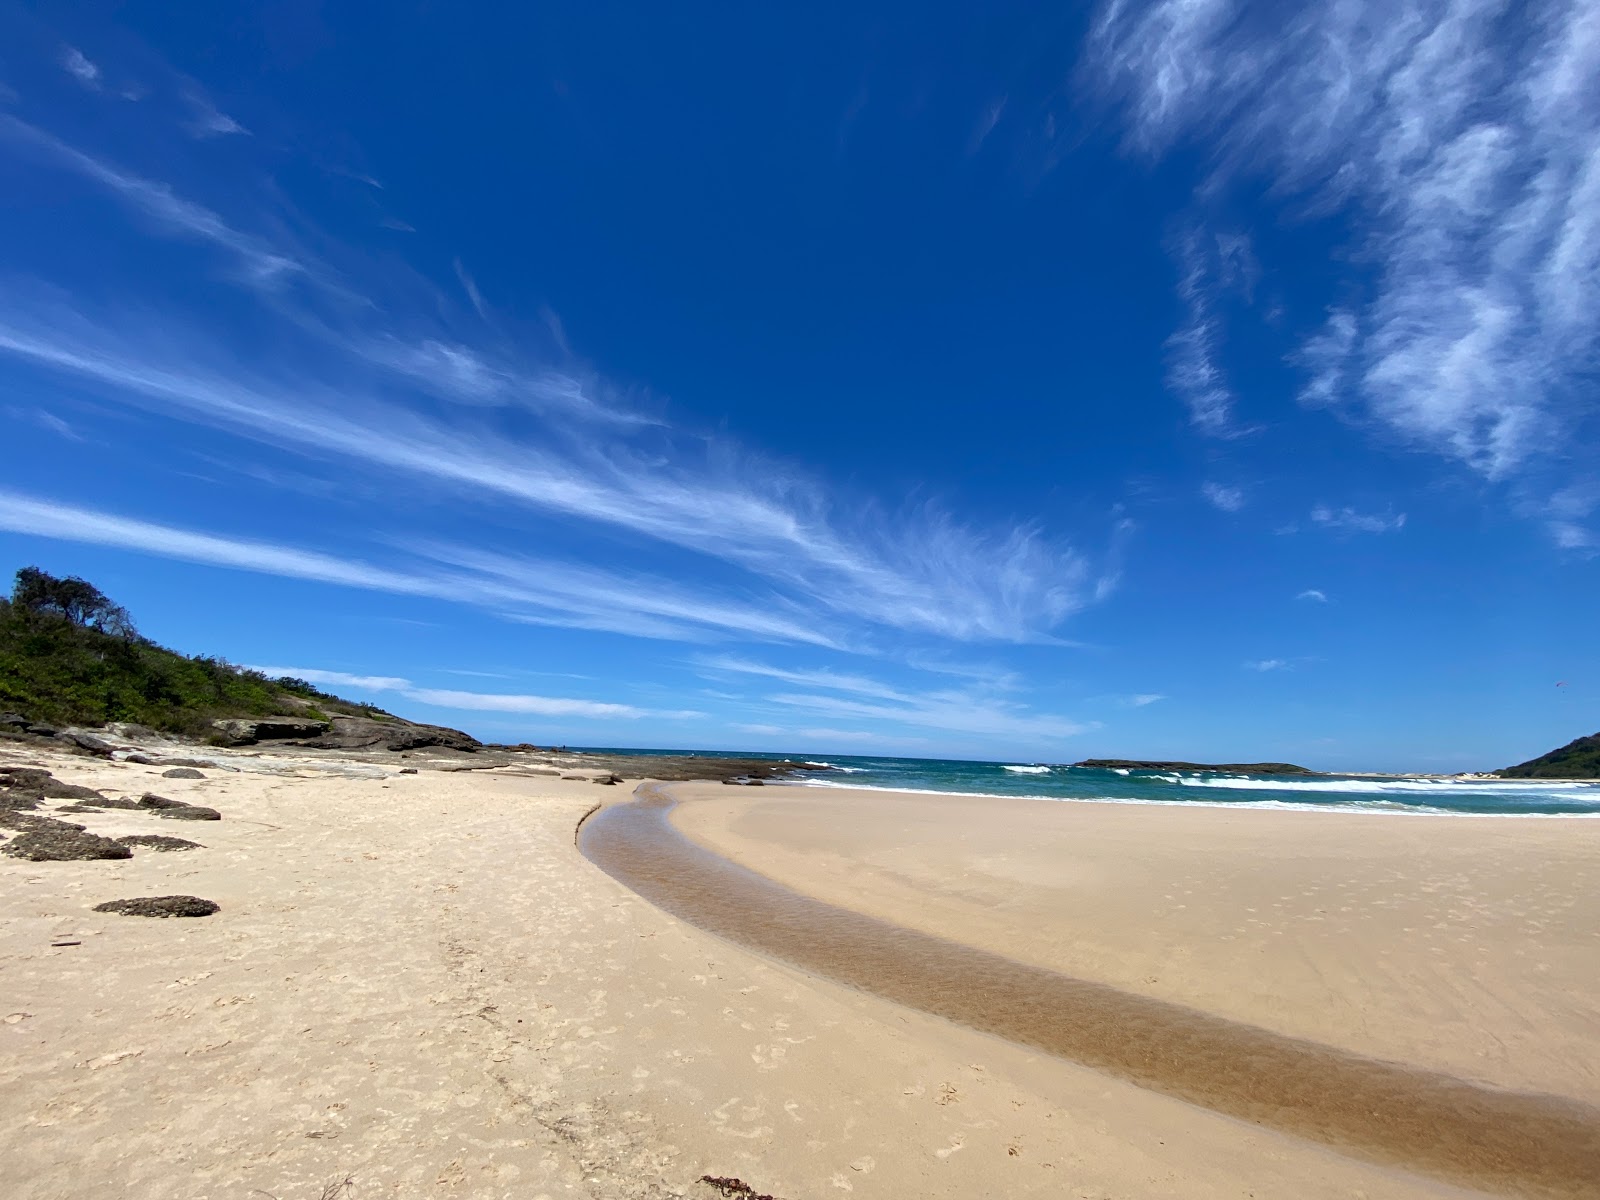 Fotografie cu Moonee Beach - locul popular printre cunoscătorii de relaxare